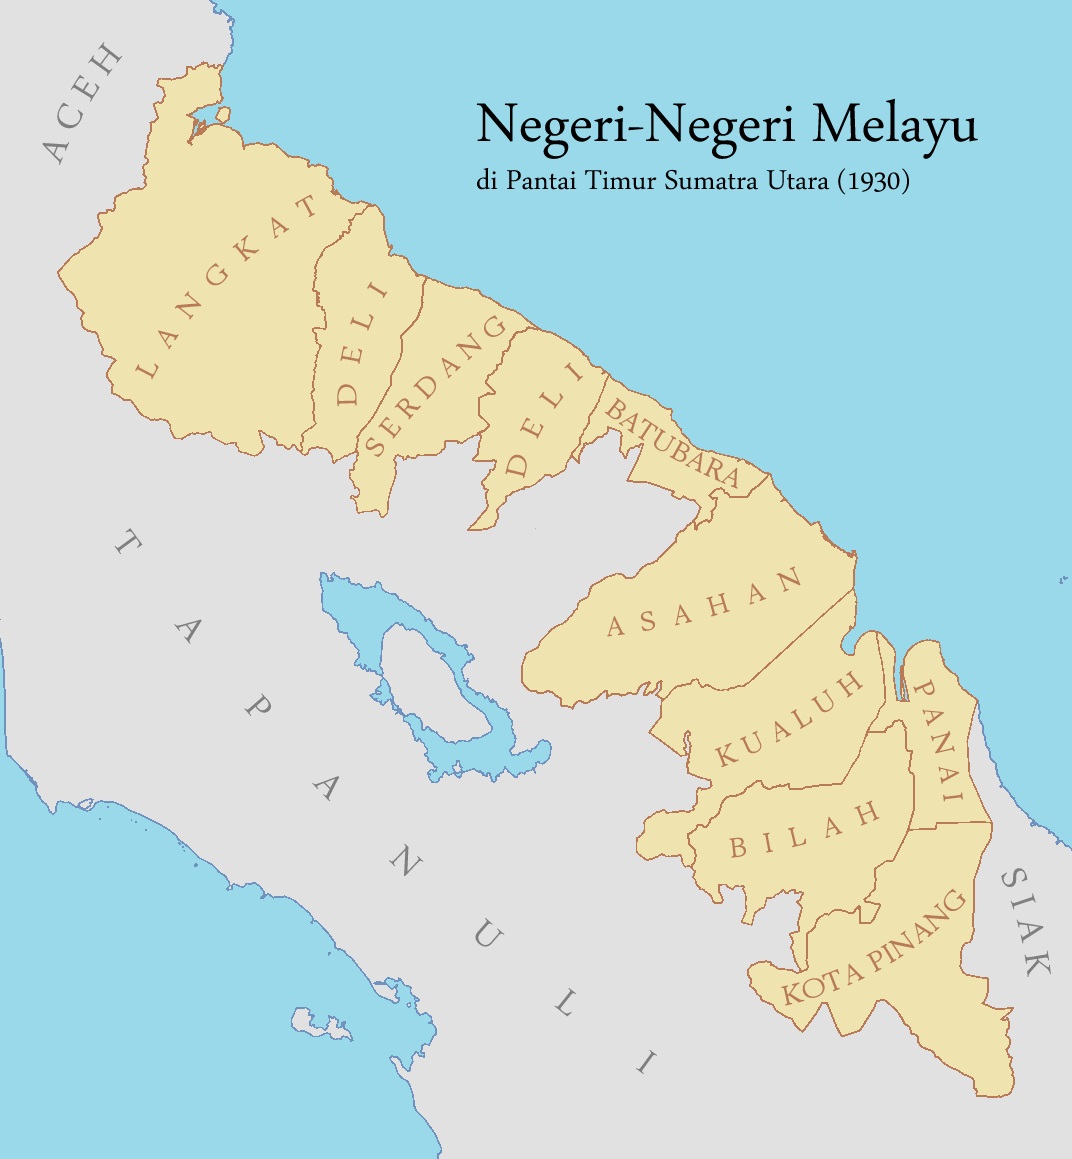 Территория султаната Серданг в 1930 году (оранжевый)